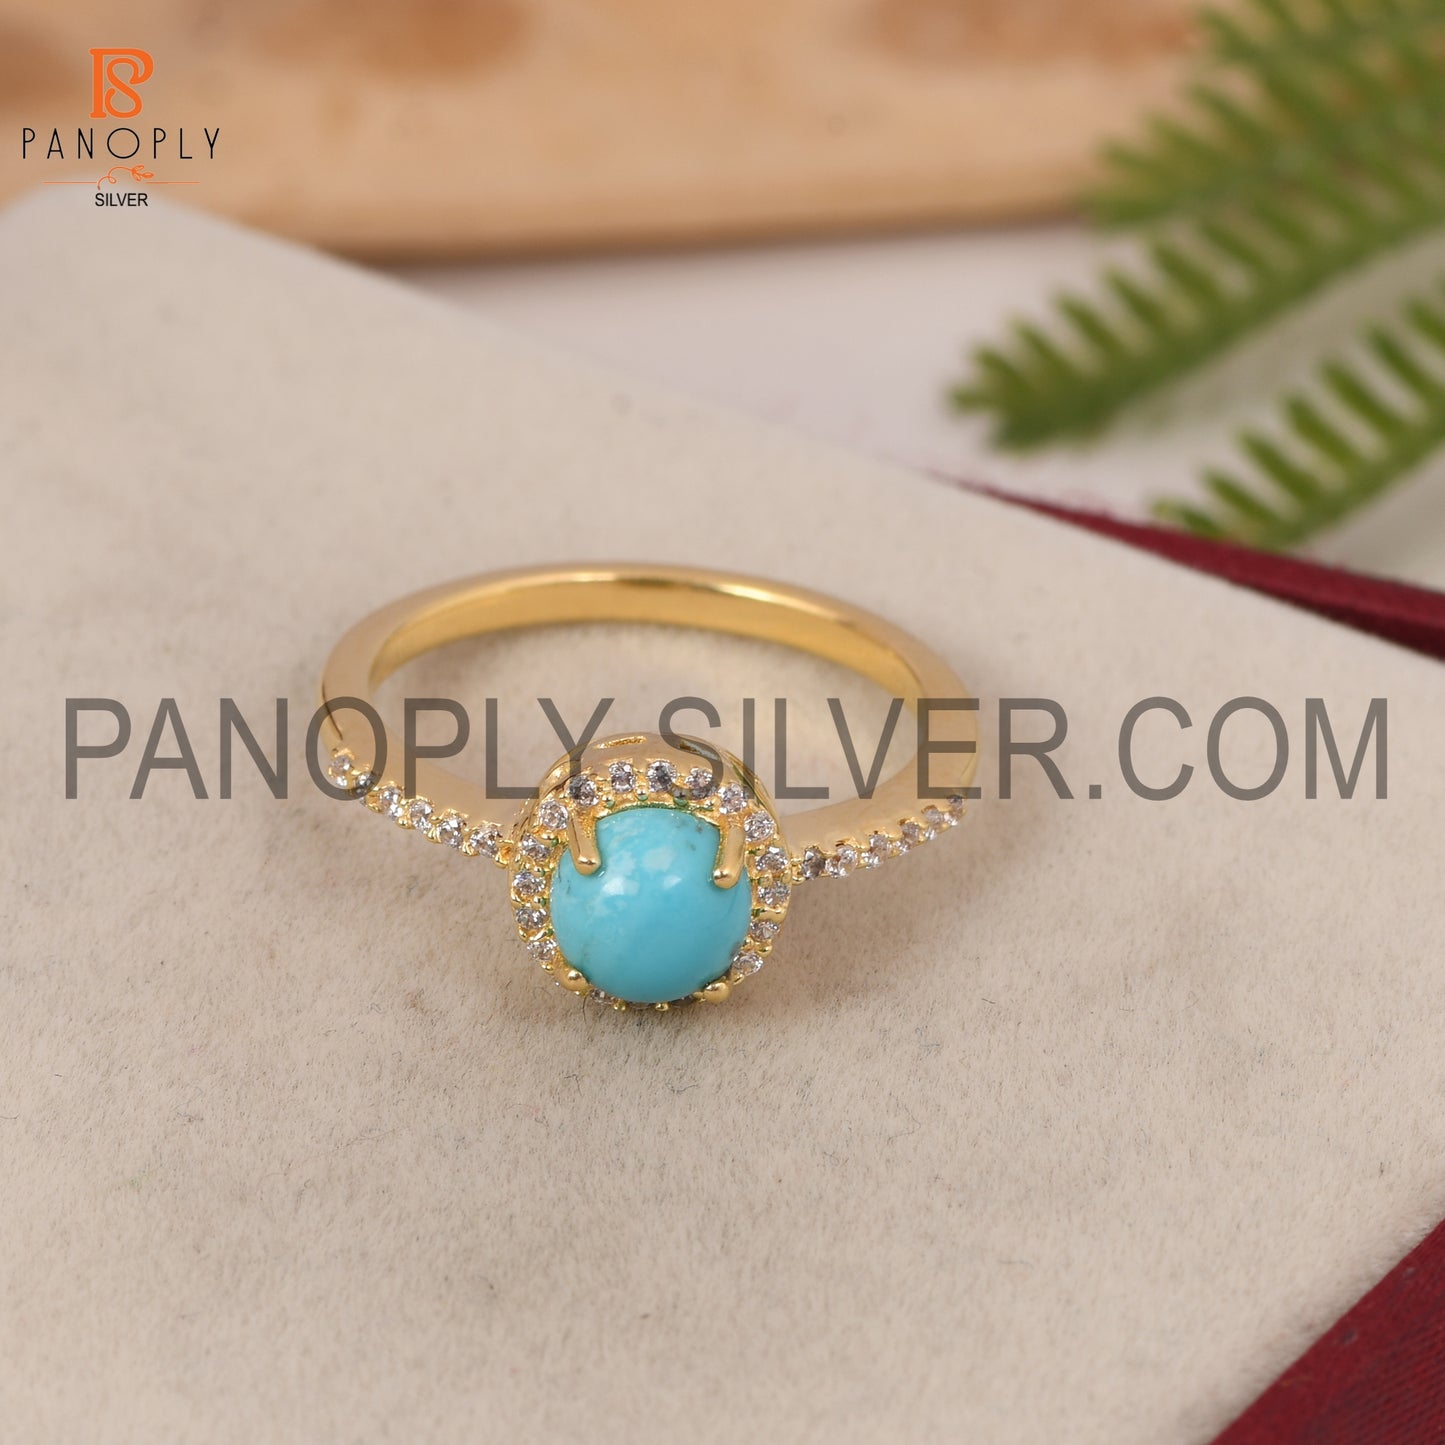 Arizona Turquoise & CZ Studded Ring Gift For Wedding